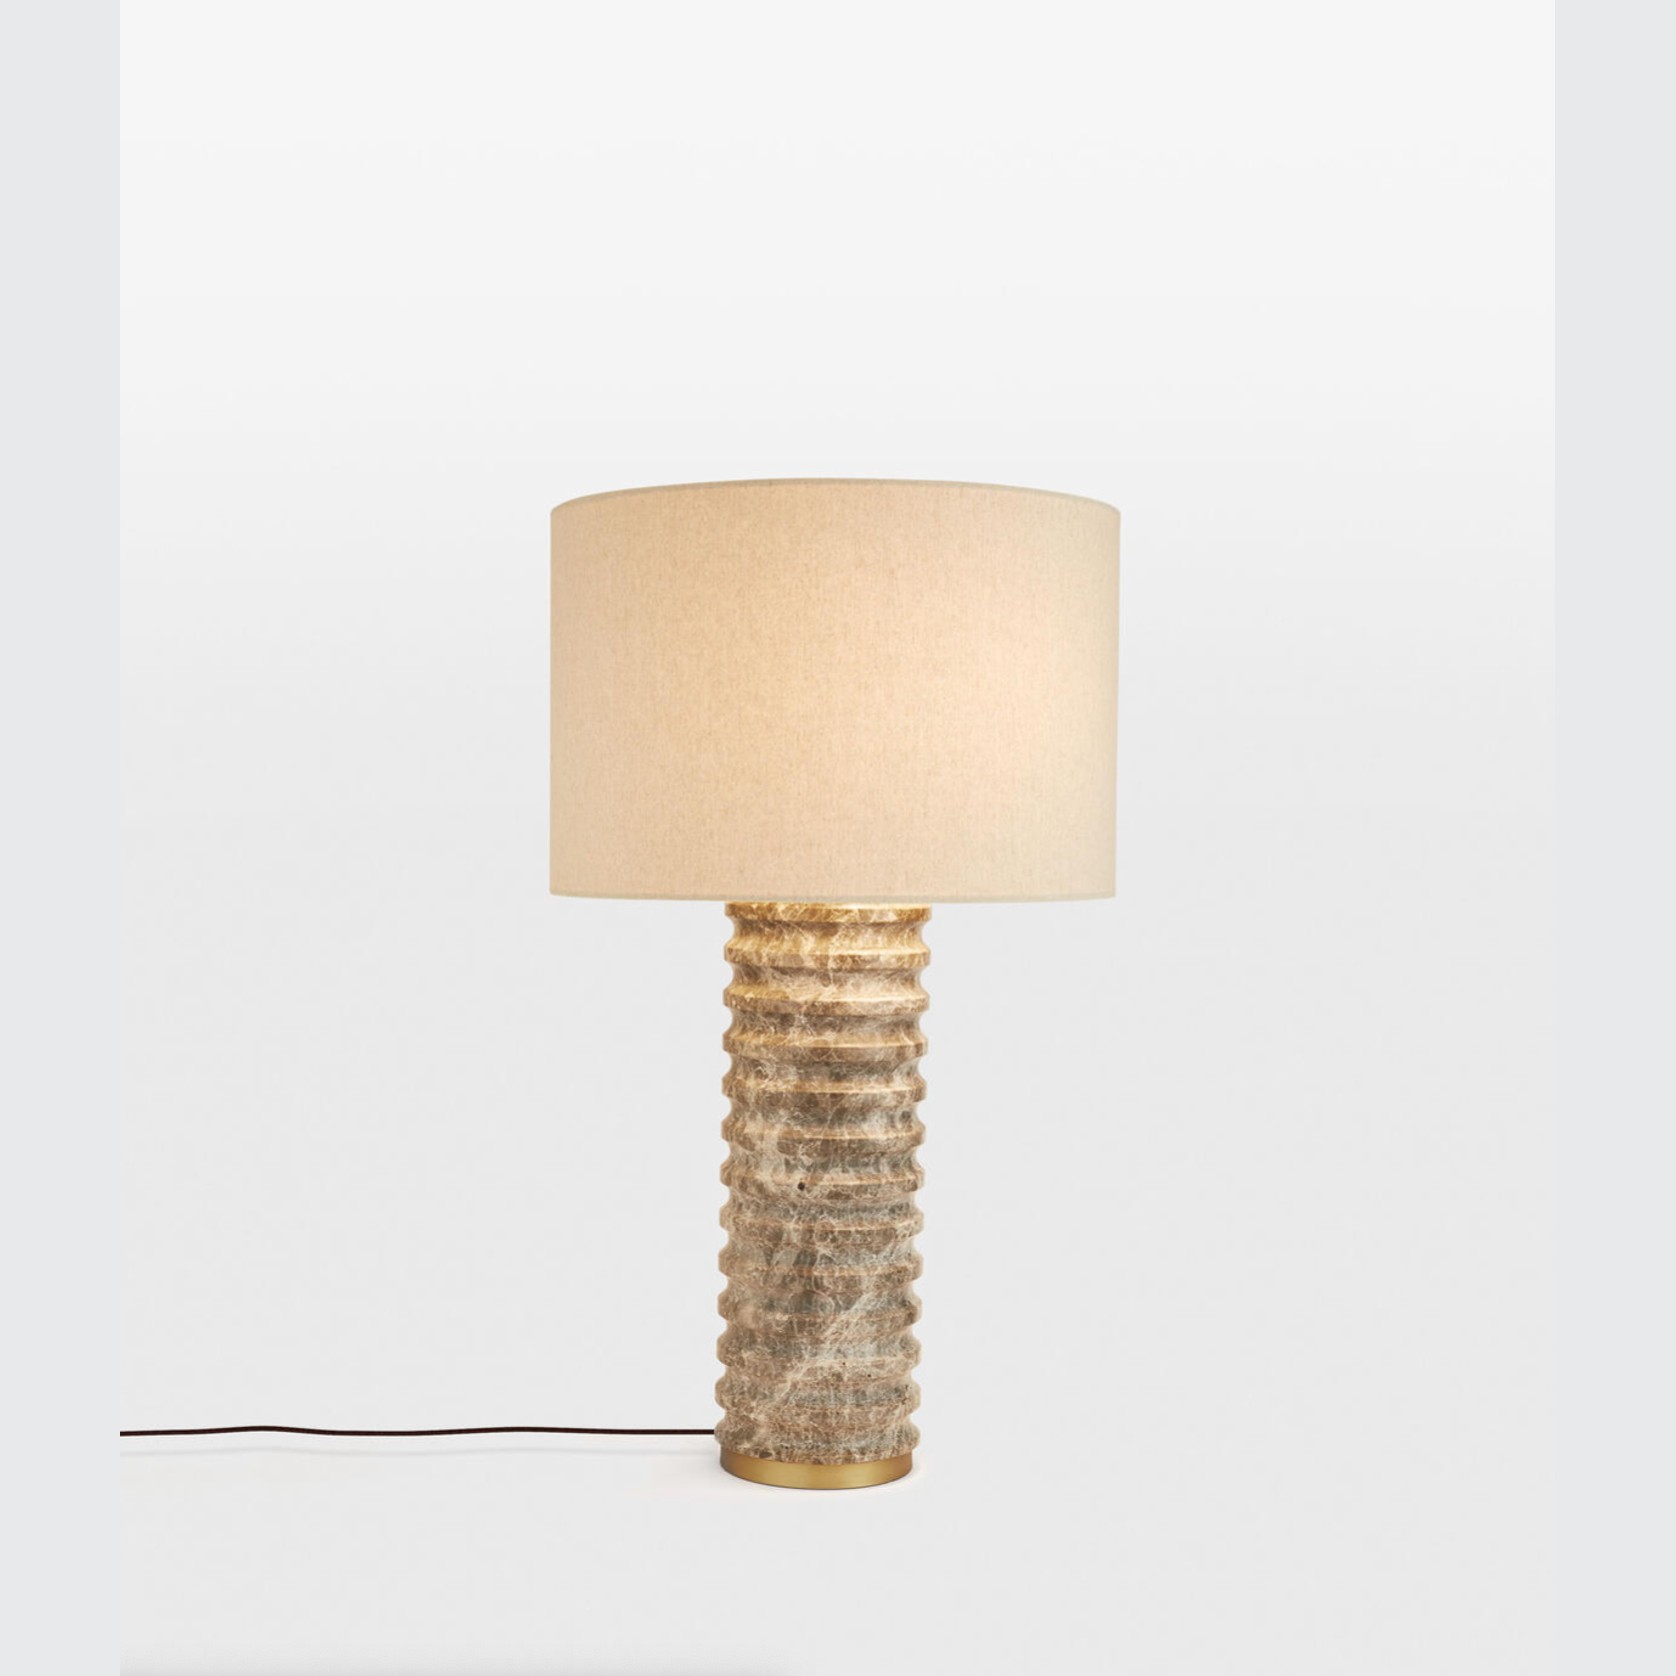 Soho Home | Casper Table Lamp gallery detail image